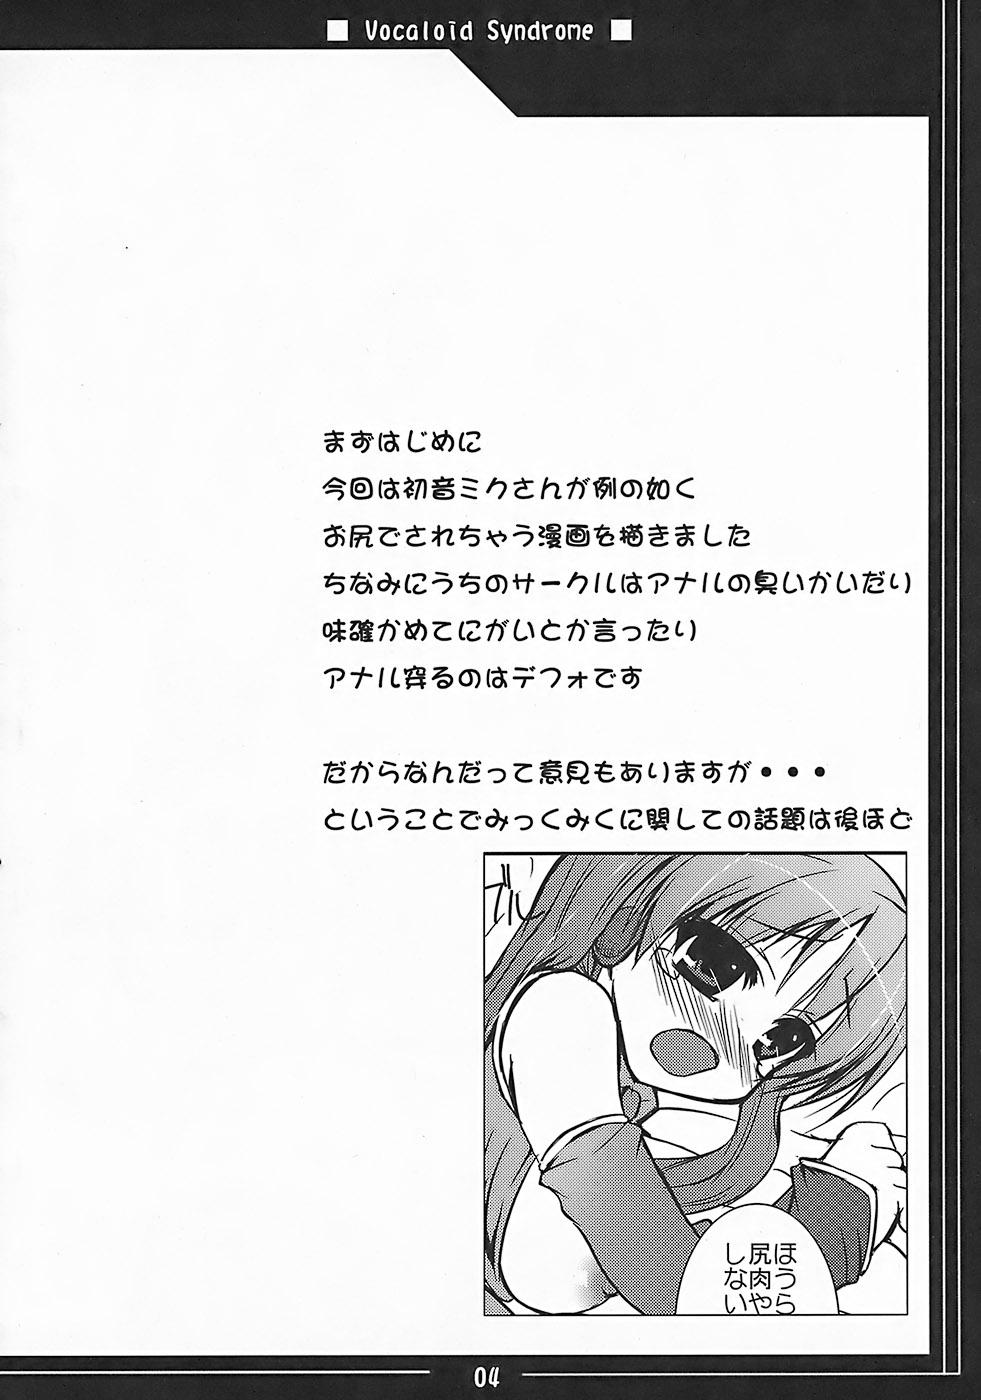 Boobs Vocaloid Shoukougun - Vocaloid Spreading - Page 3